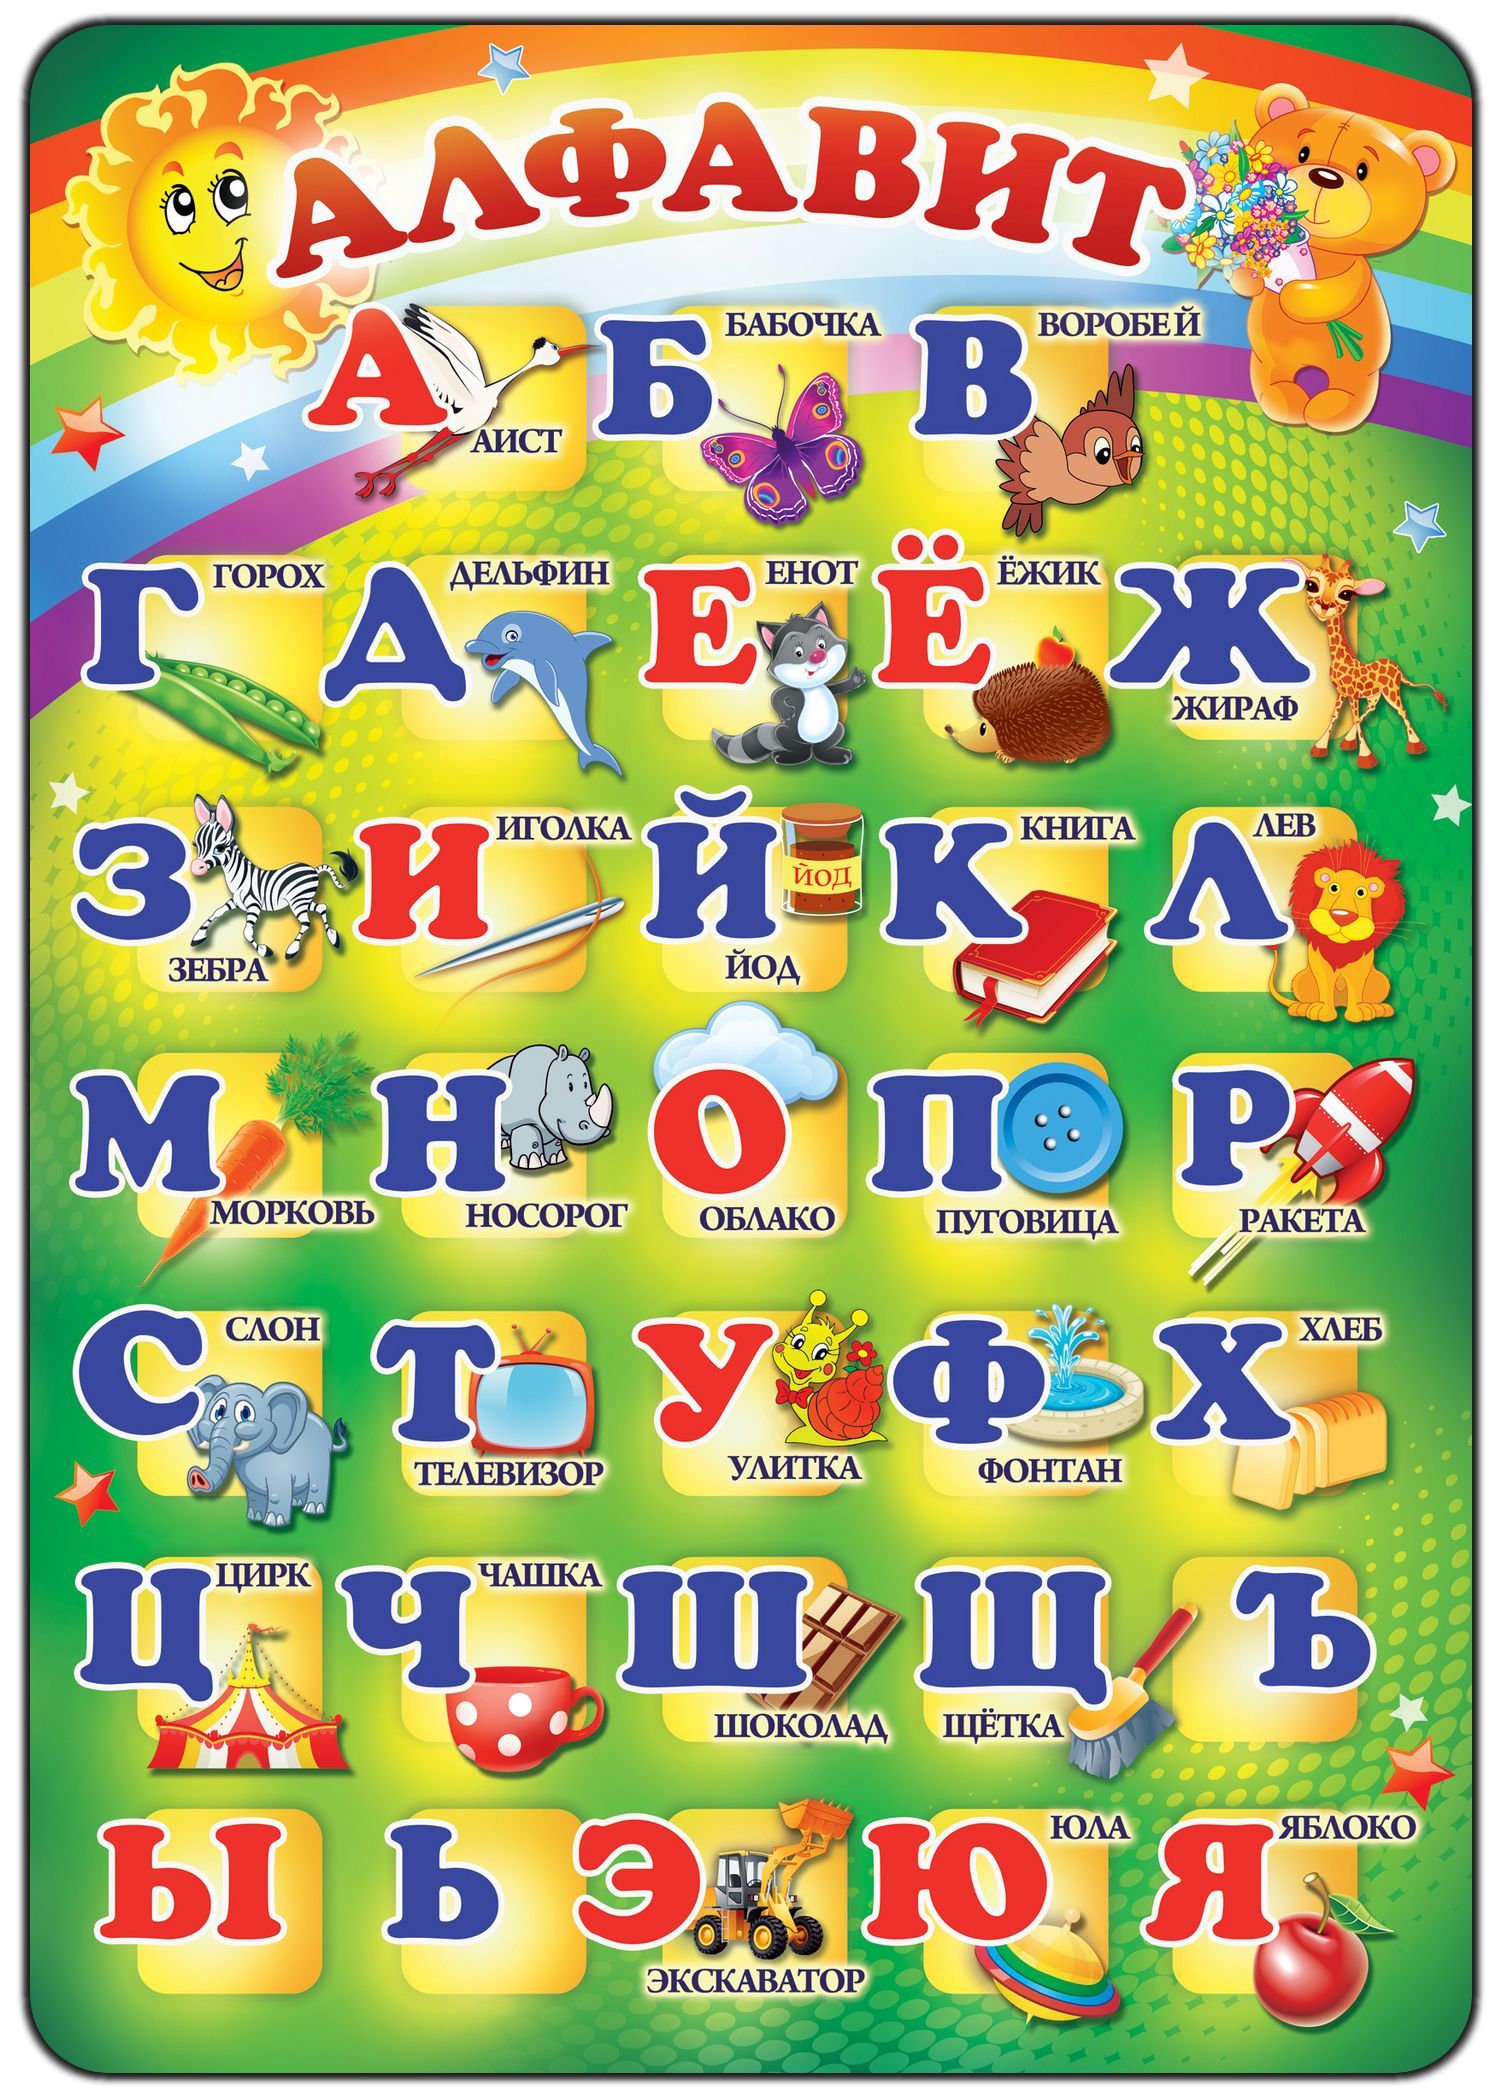 Алфавит детям отзывы. Алфавит для детей. Алфавит русский для детей. Алфавит "детский". Азбука в картинках.